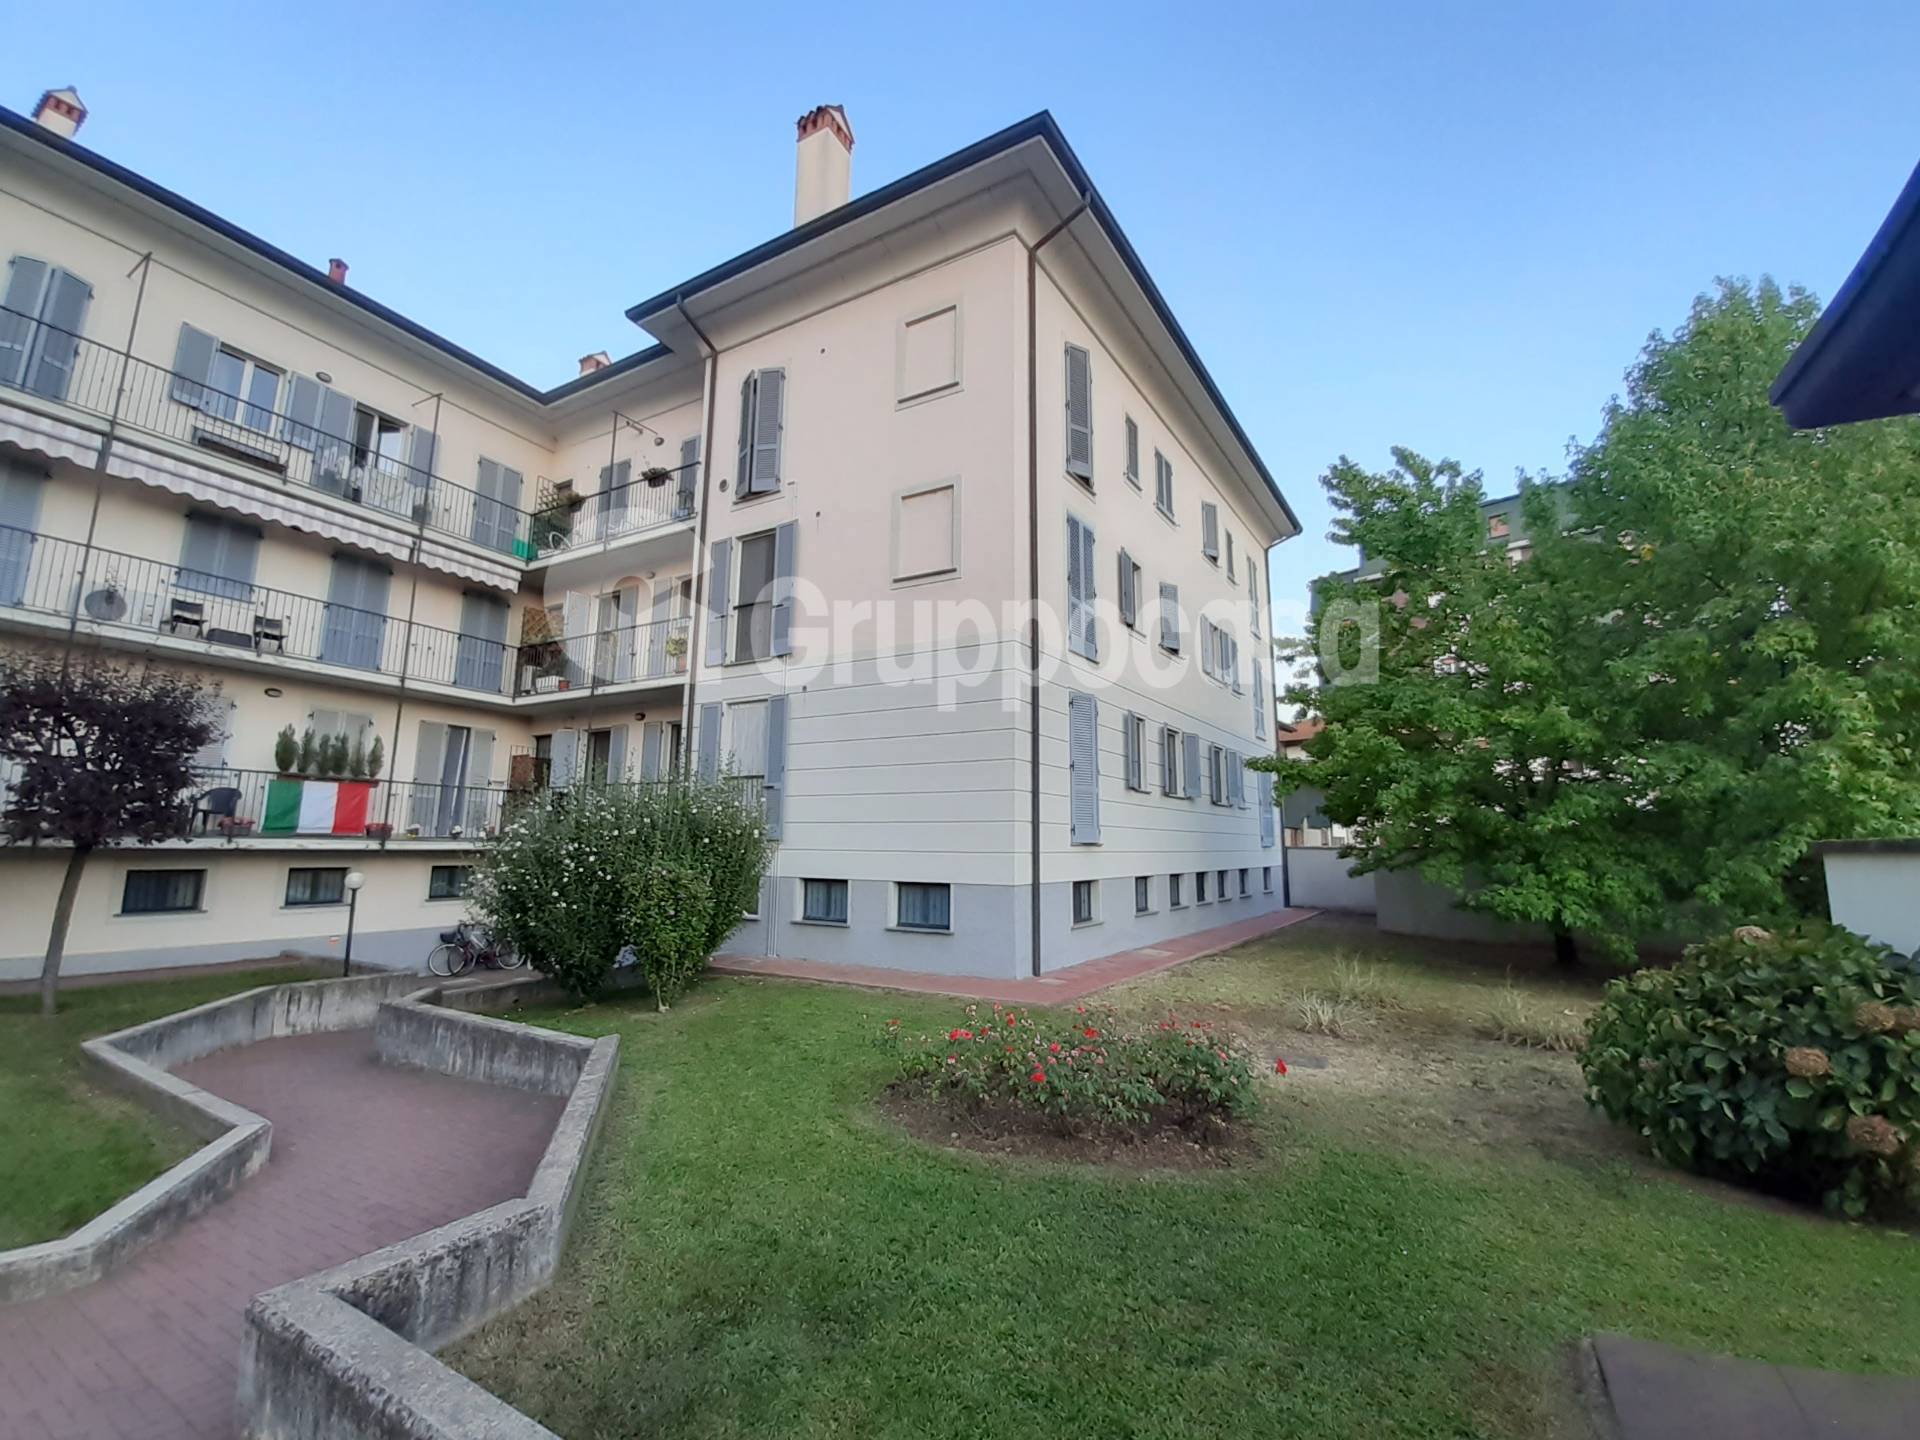 Appartamento in vendita a Marcallo con Casone, 4 locali, zona allo, prezzo € 188.000 | PortaleAgenzieImmobiliari.it